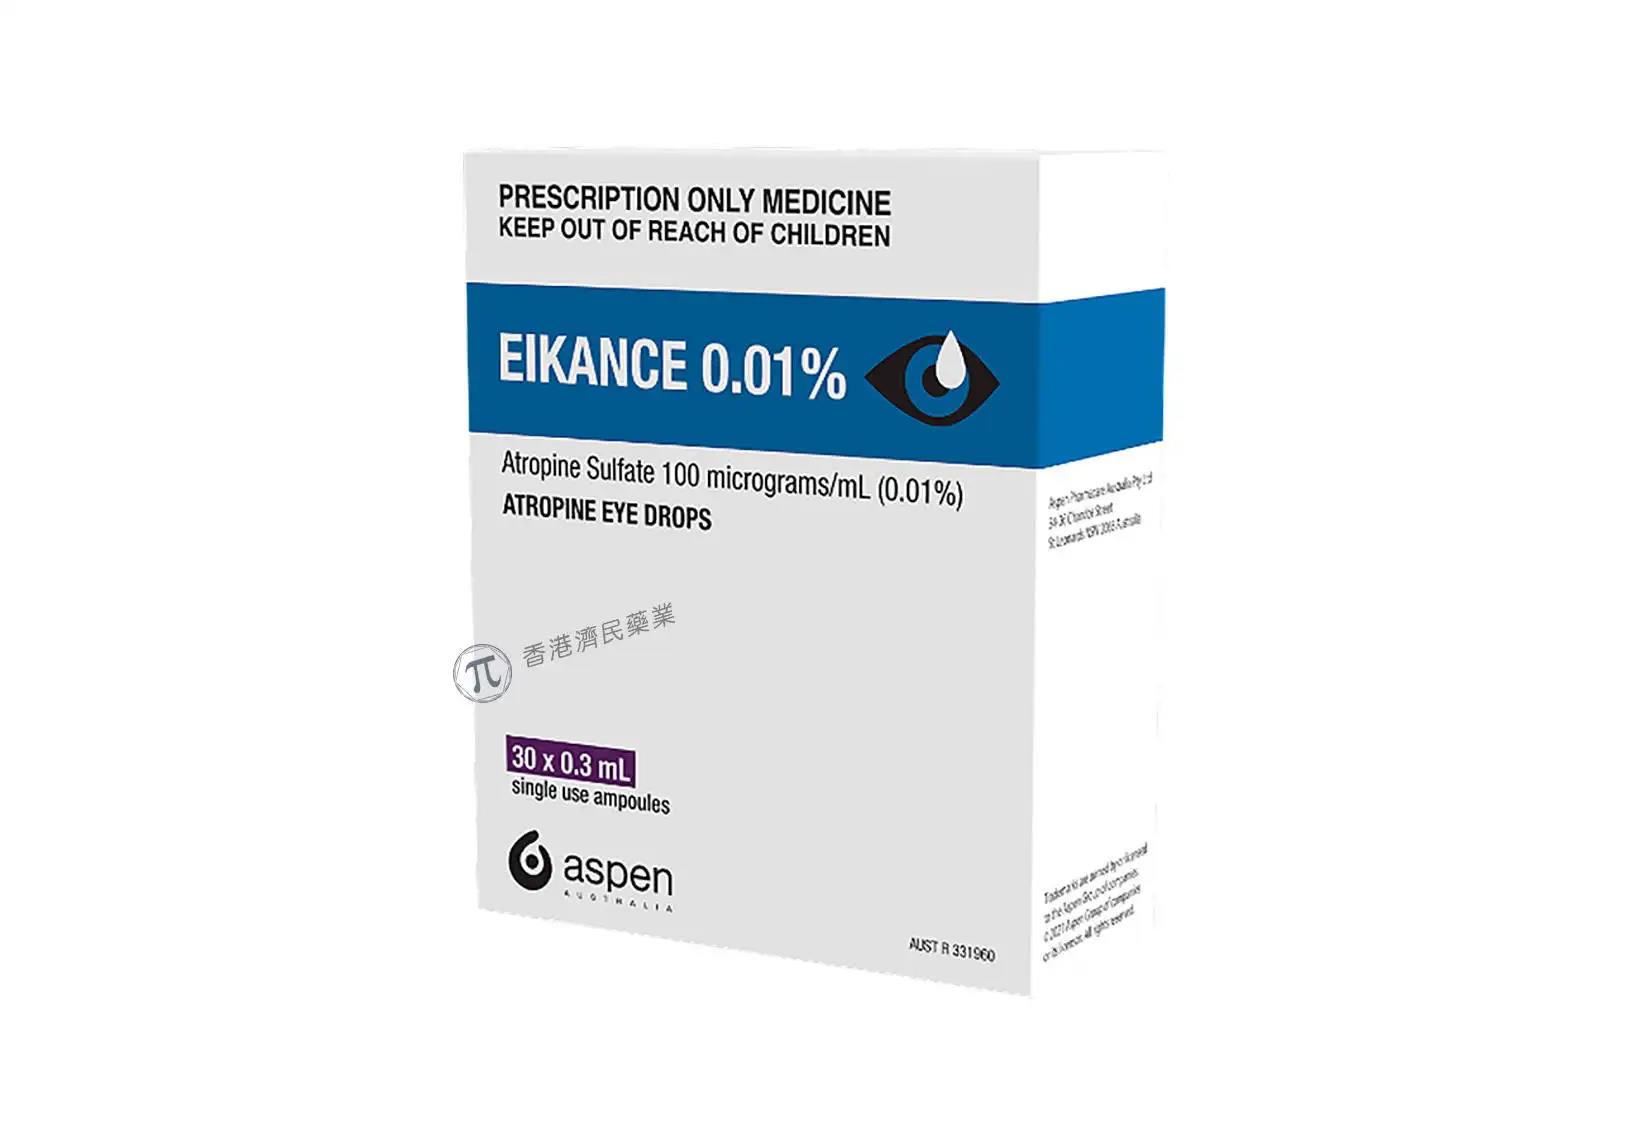 低剂量阿托品EIKANCE 0.01%首次获澳大利亚批准，以减缓近视的发展_香港济民药业